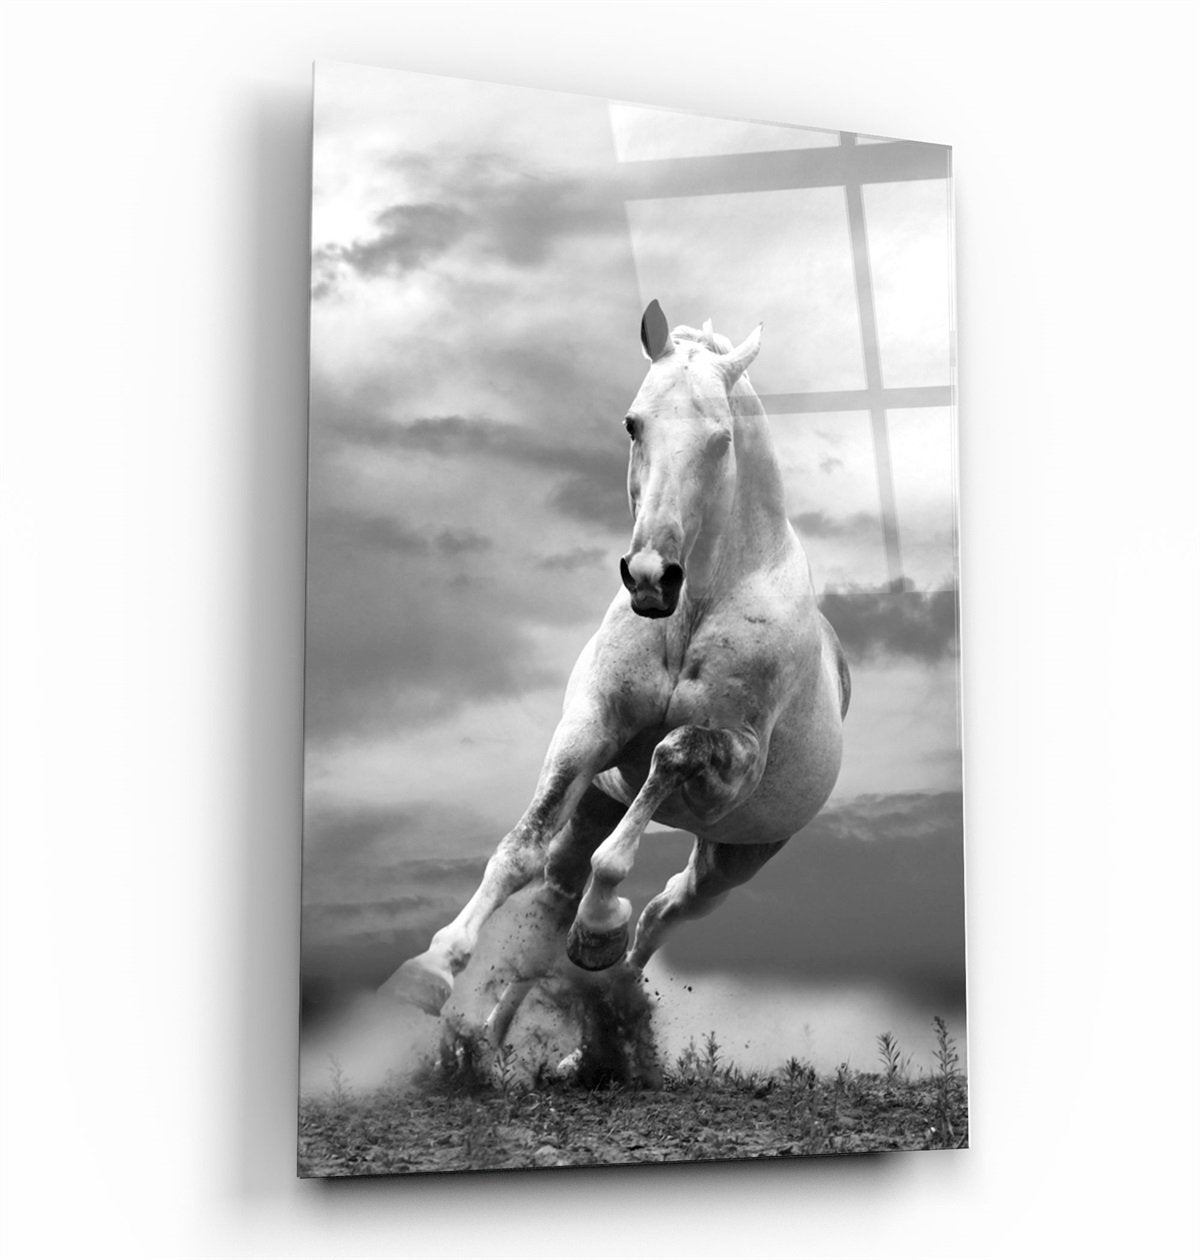 ・"Running Horse"・Glass Wall Art